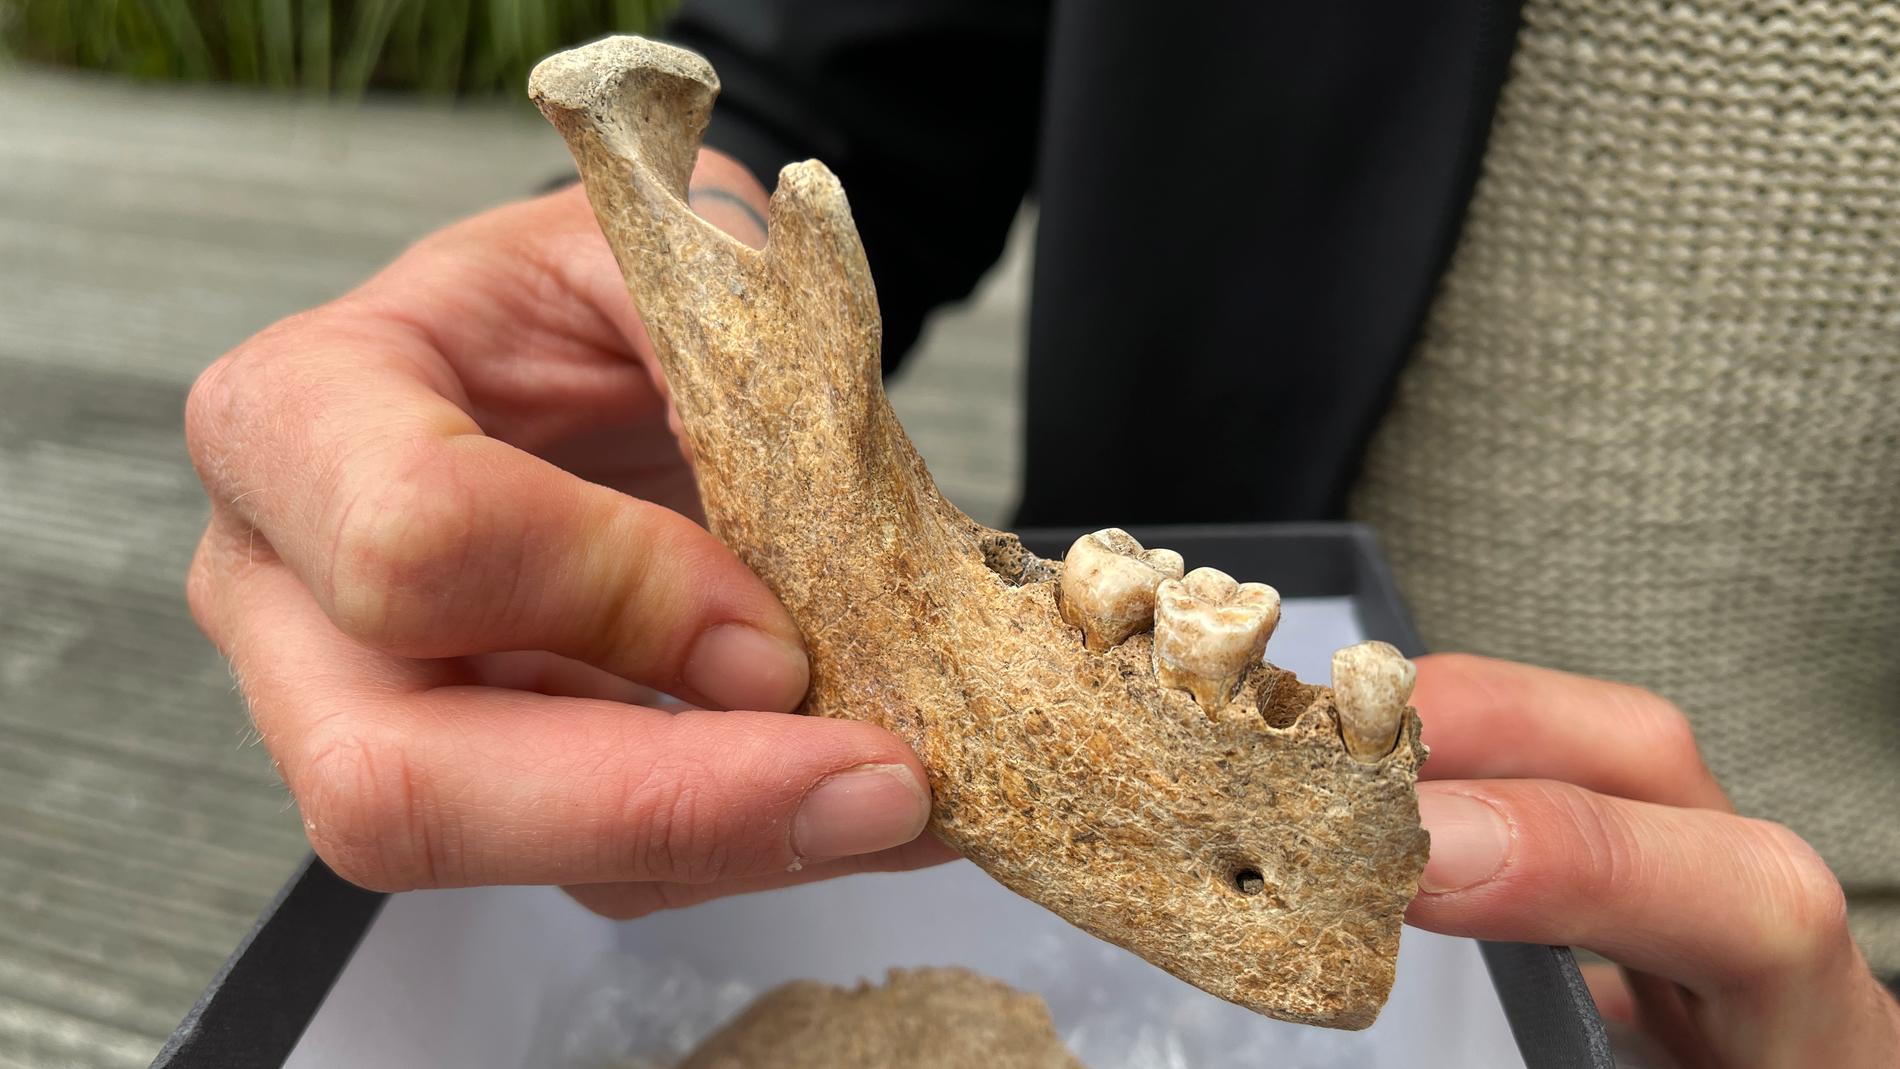 Skelettdelar som hittades i en villaträdgård i Hunnebostrand visade sig vara från vikingatiden – något som är ovanligt, enligt experter.